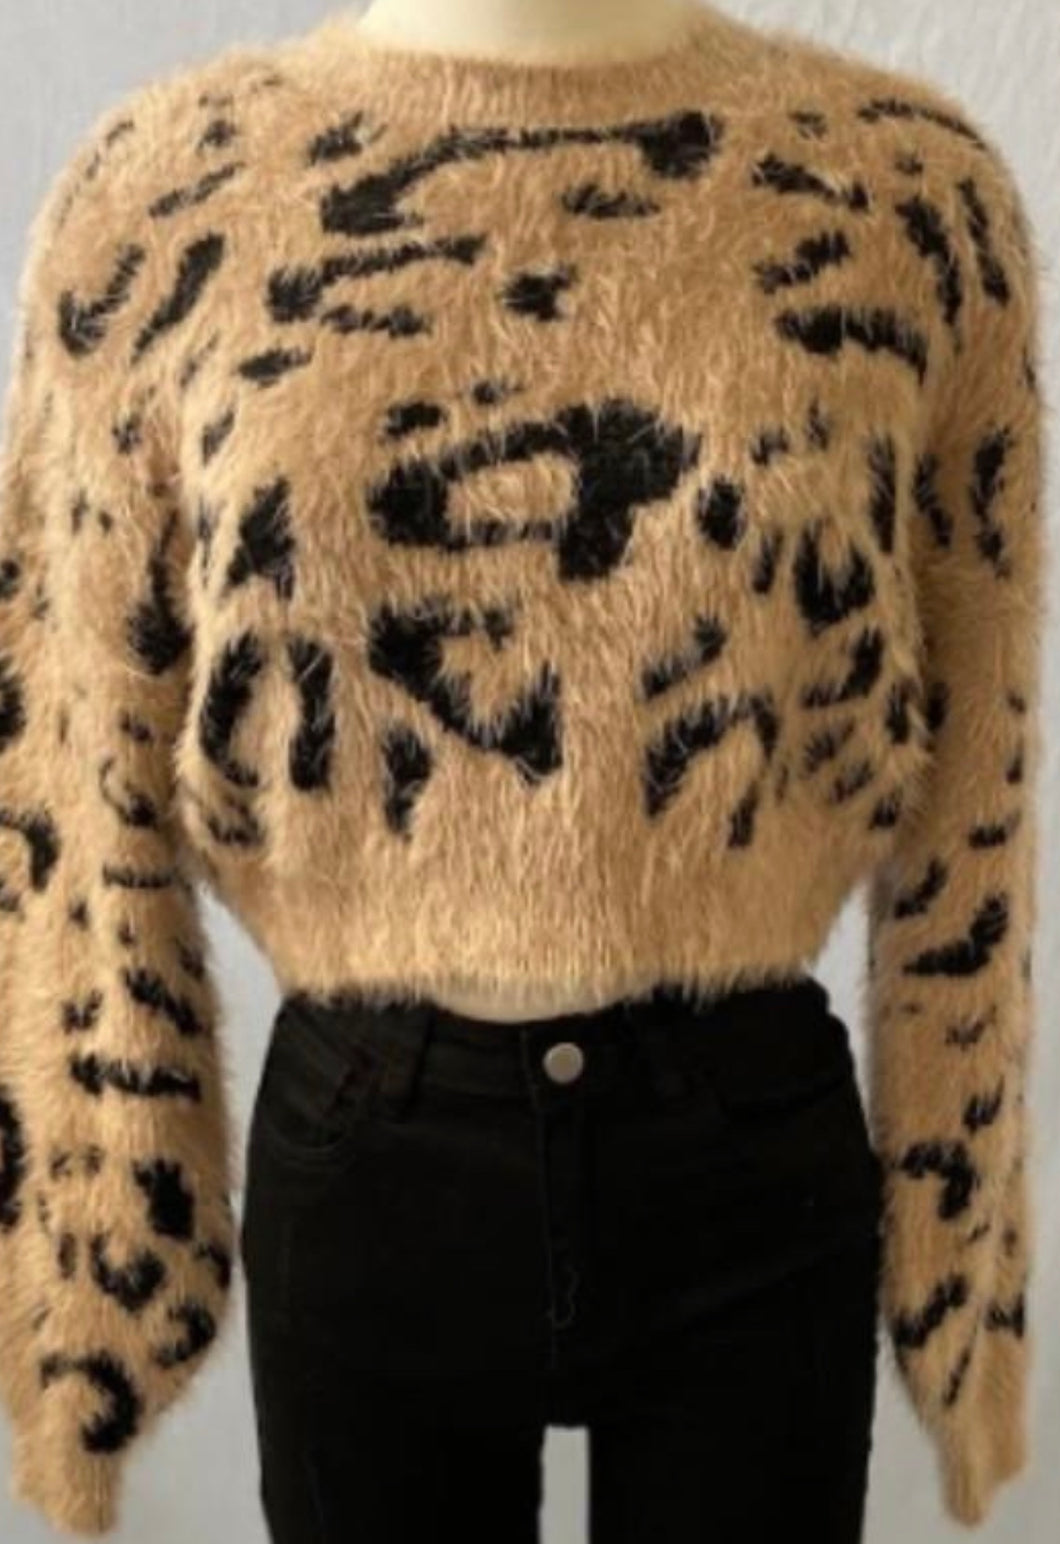 Leopard Fuzzy Knit Sweater